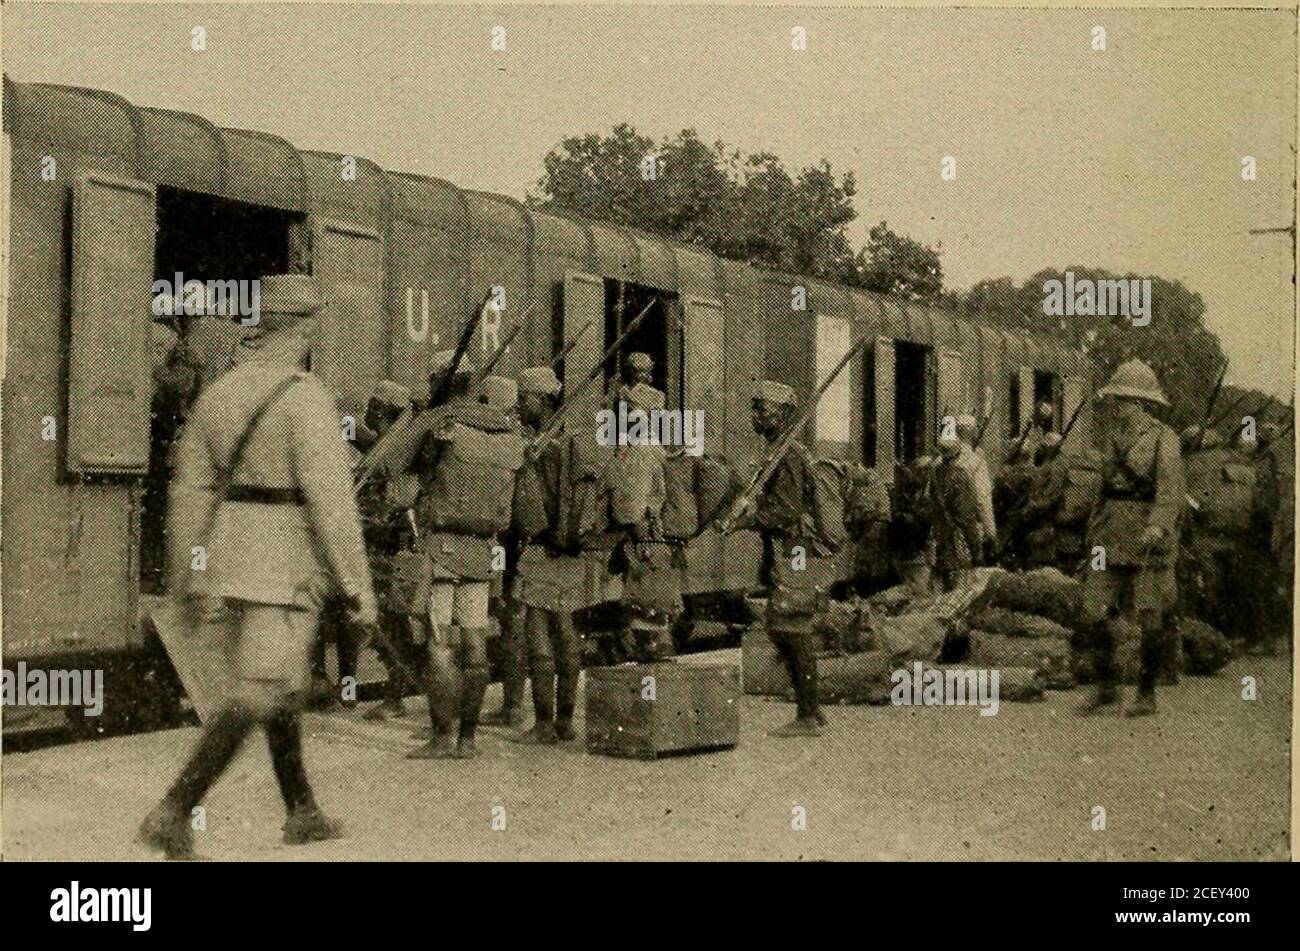 . Südlich von Suez. Shirati Ehefrauen von Kikuyu Askaris, im Muanza Distrikt, Deutsch Ostafrika.. M3ing-Säule, die am VOI in Stahlwagen der Uganda Railway einführt. SÜDLICH VON SUEZ hatten Stammgäste eine Reihe von Gefangenen eingeholt und von den Nahrungspartys vertrieben. Ein inteUigenceoffizist, der von Mkalama aus auffortschelte, hatte berichtet, dass die schwindende deutsche Streitmacht ihr Lager verlassen und nach Norden geflohen sei. Dieser eilige Rückzug bedeutete dreierlei marsch ohne Wasser, und am Ende würden sie direkt in die Hände meiner nördlichen Patrouille bringen. Es gab dann nichts für mich zu tun, außer Toret Stockfoto